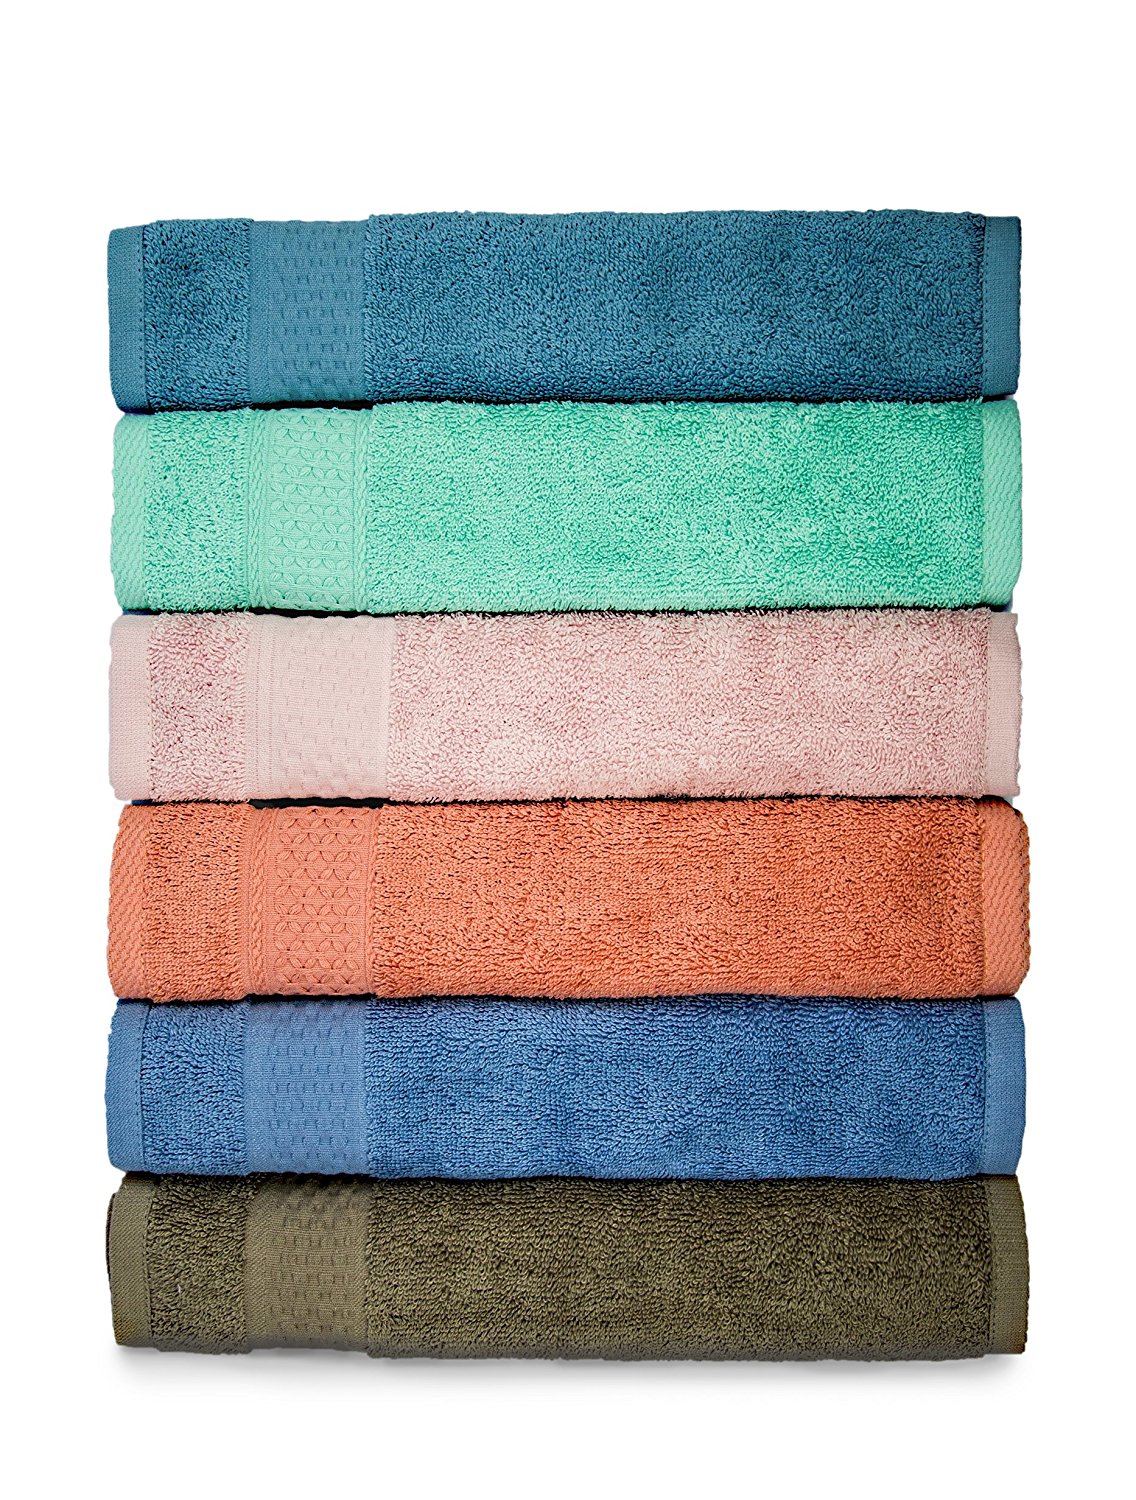 Cleanbear Cotton Bath Washcloths